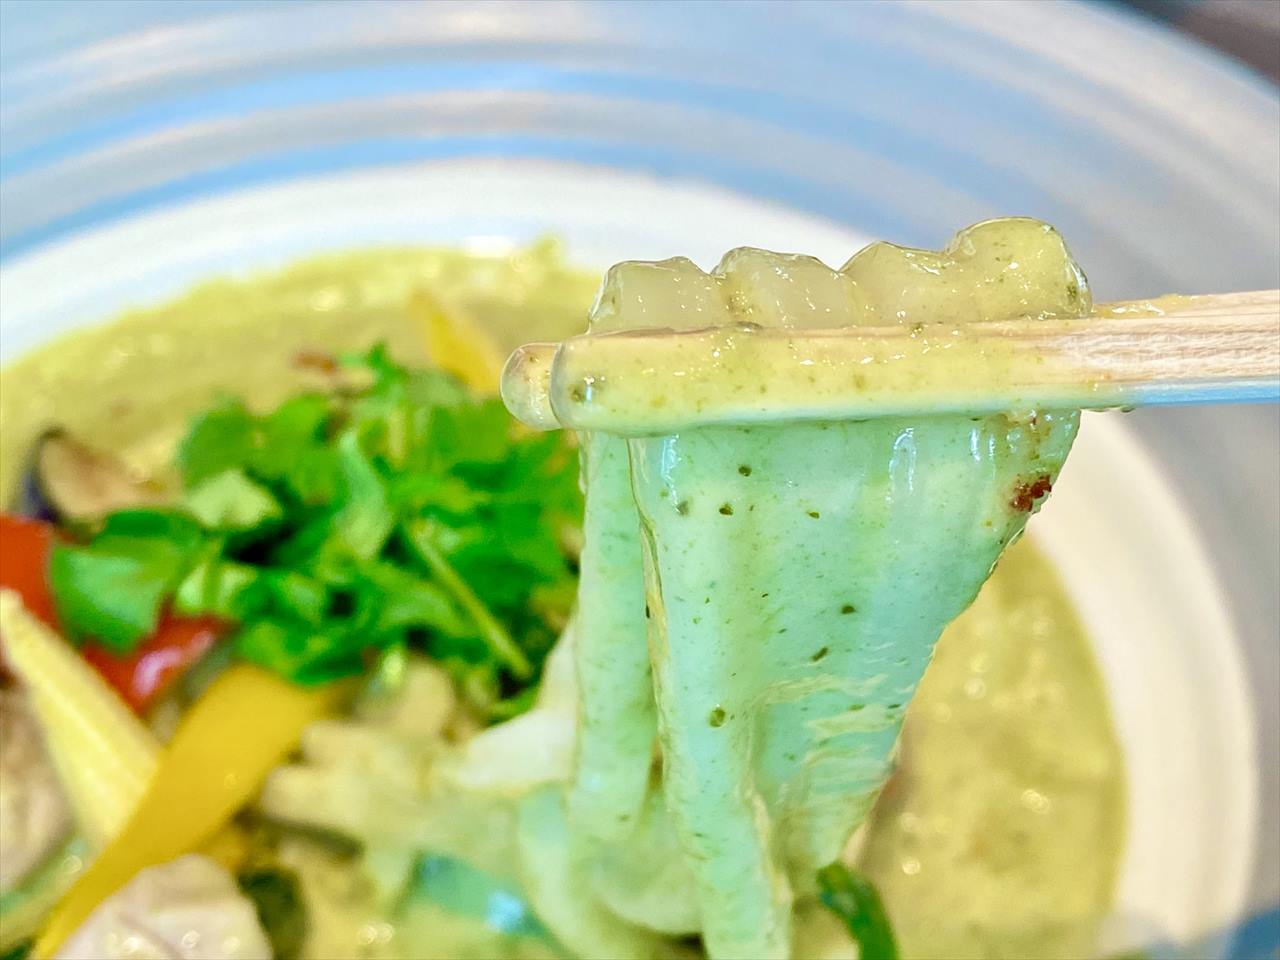 パクチー香る 夏野菜グリーンカレーのおうどん麺アップ